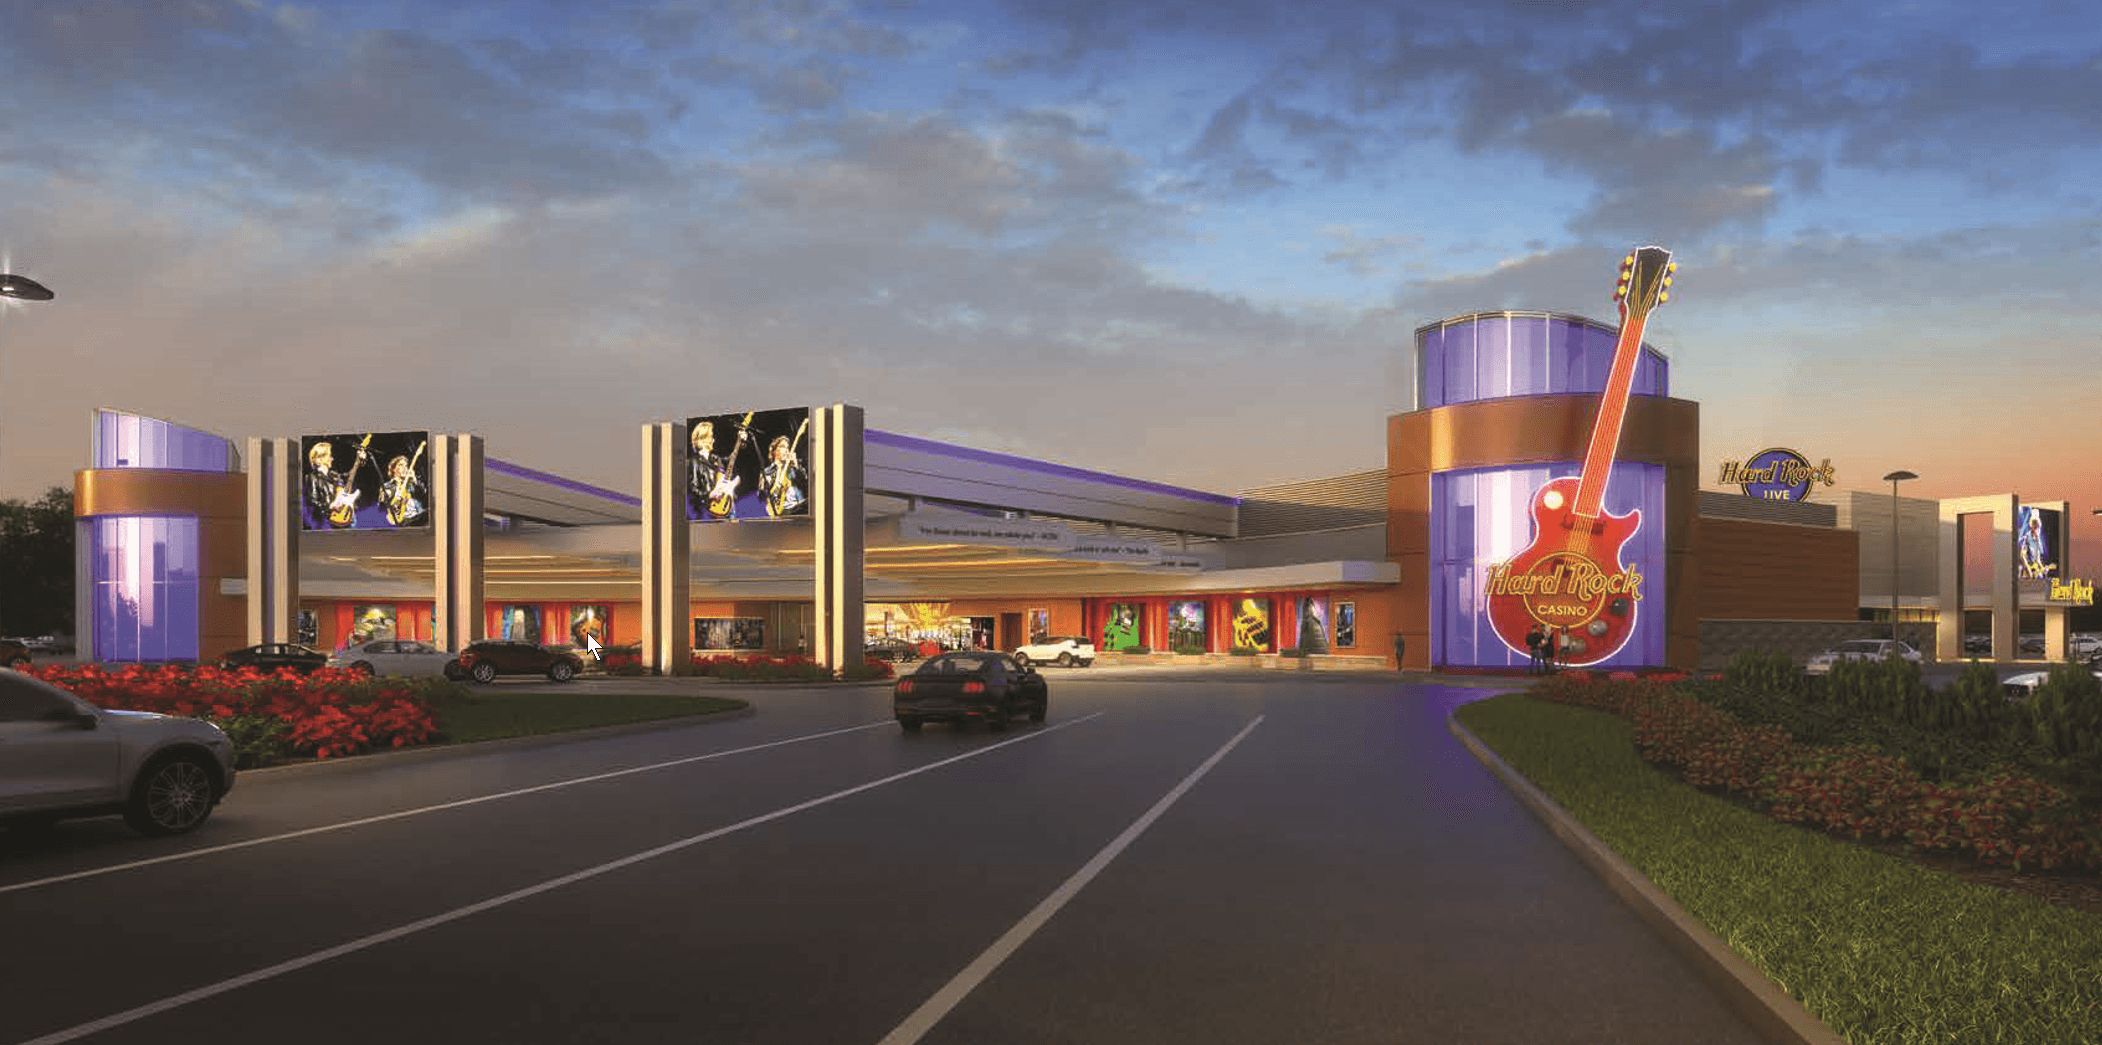 Island casino michigan reopening date